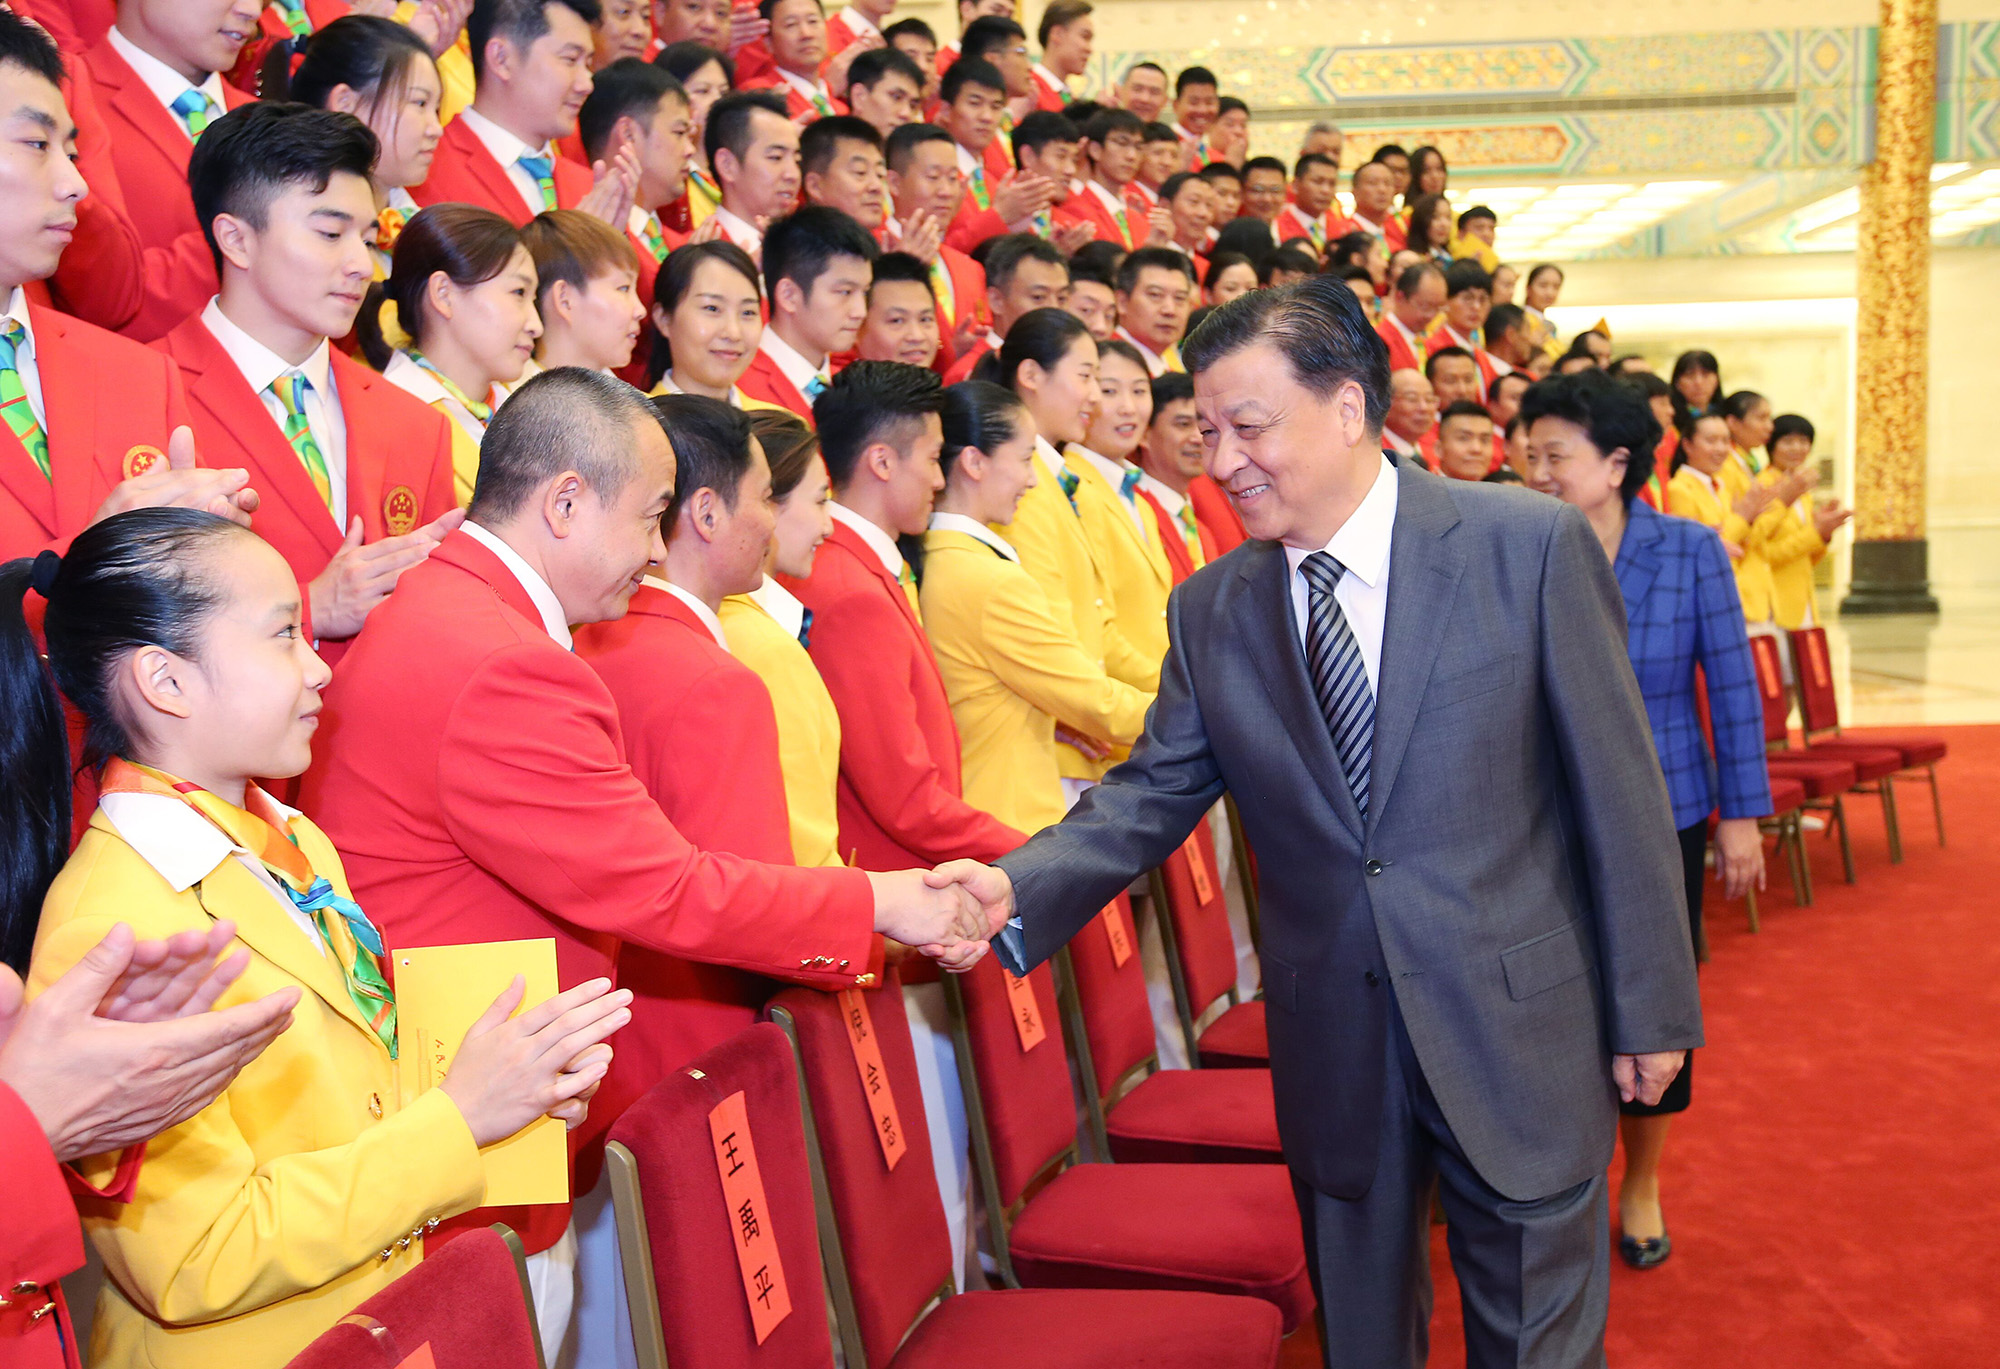 中國征奧體育團正式成立